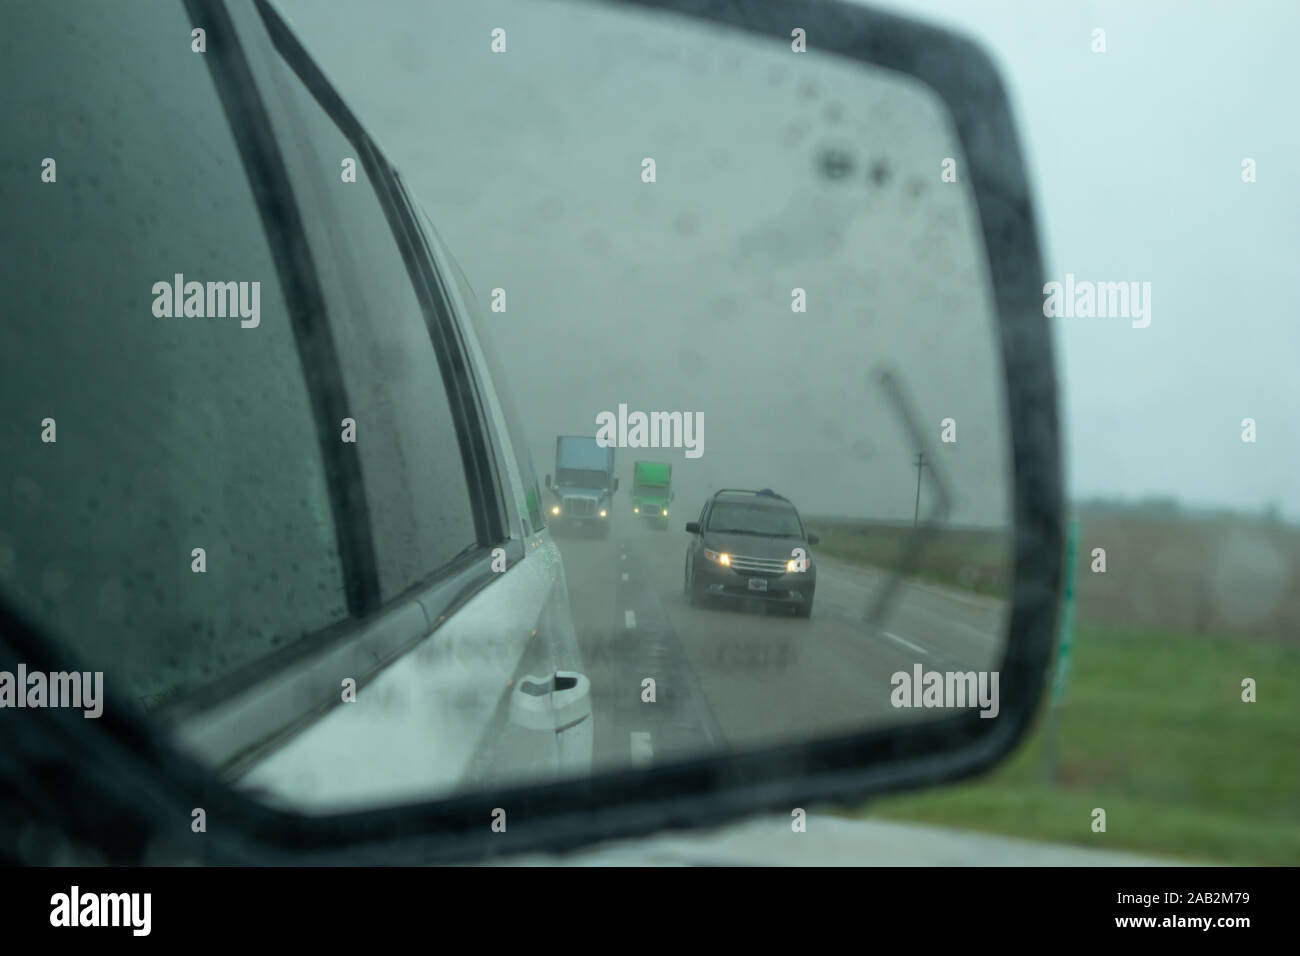 Conduire sur une route un jour de printemps pluvieux. Les véhicules circulant sur une autoroute aux États-Unis countrside reflète dans une voiture wing mirror lors d'une pluie, ciel nuageux Banque D'Images